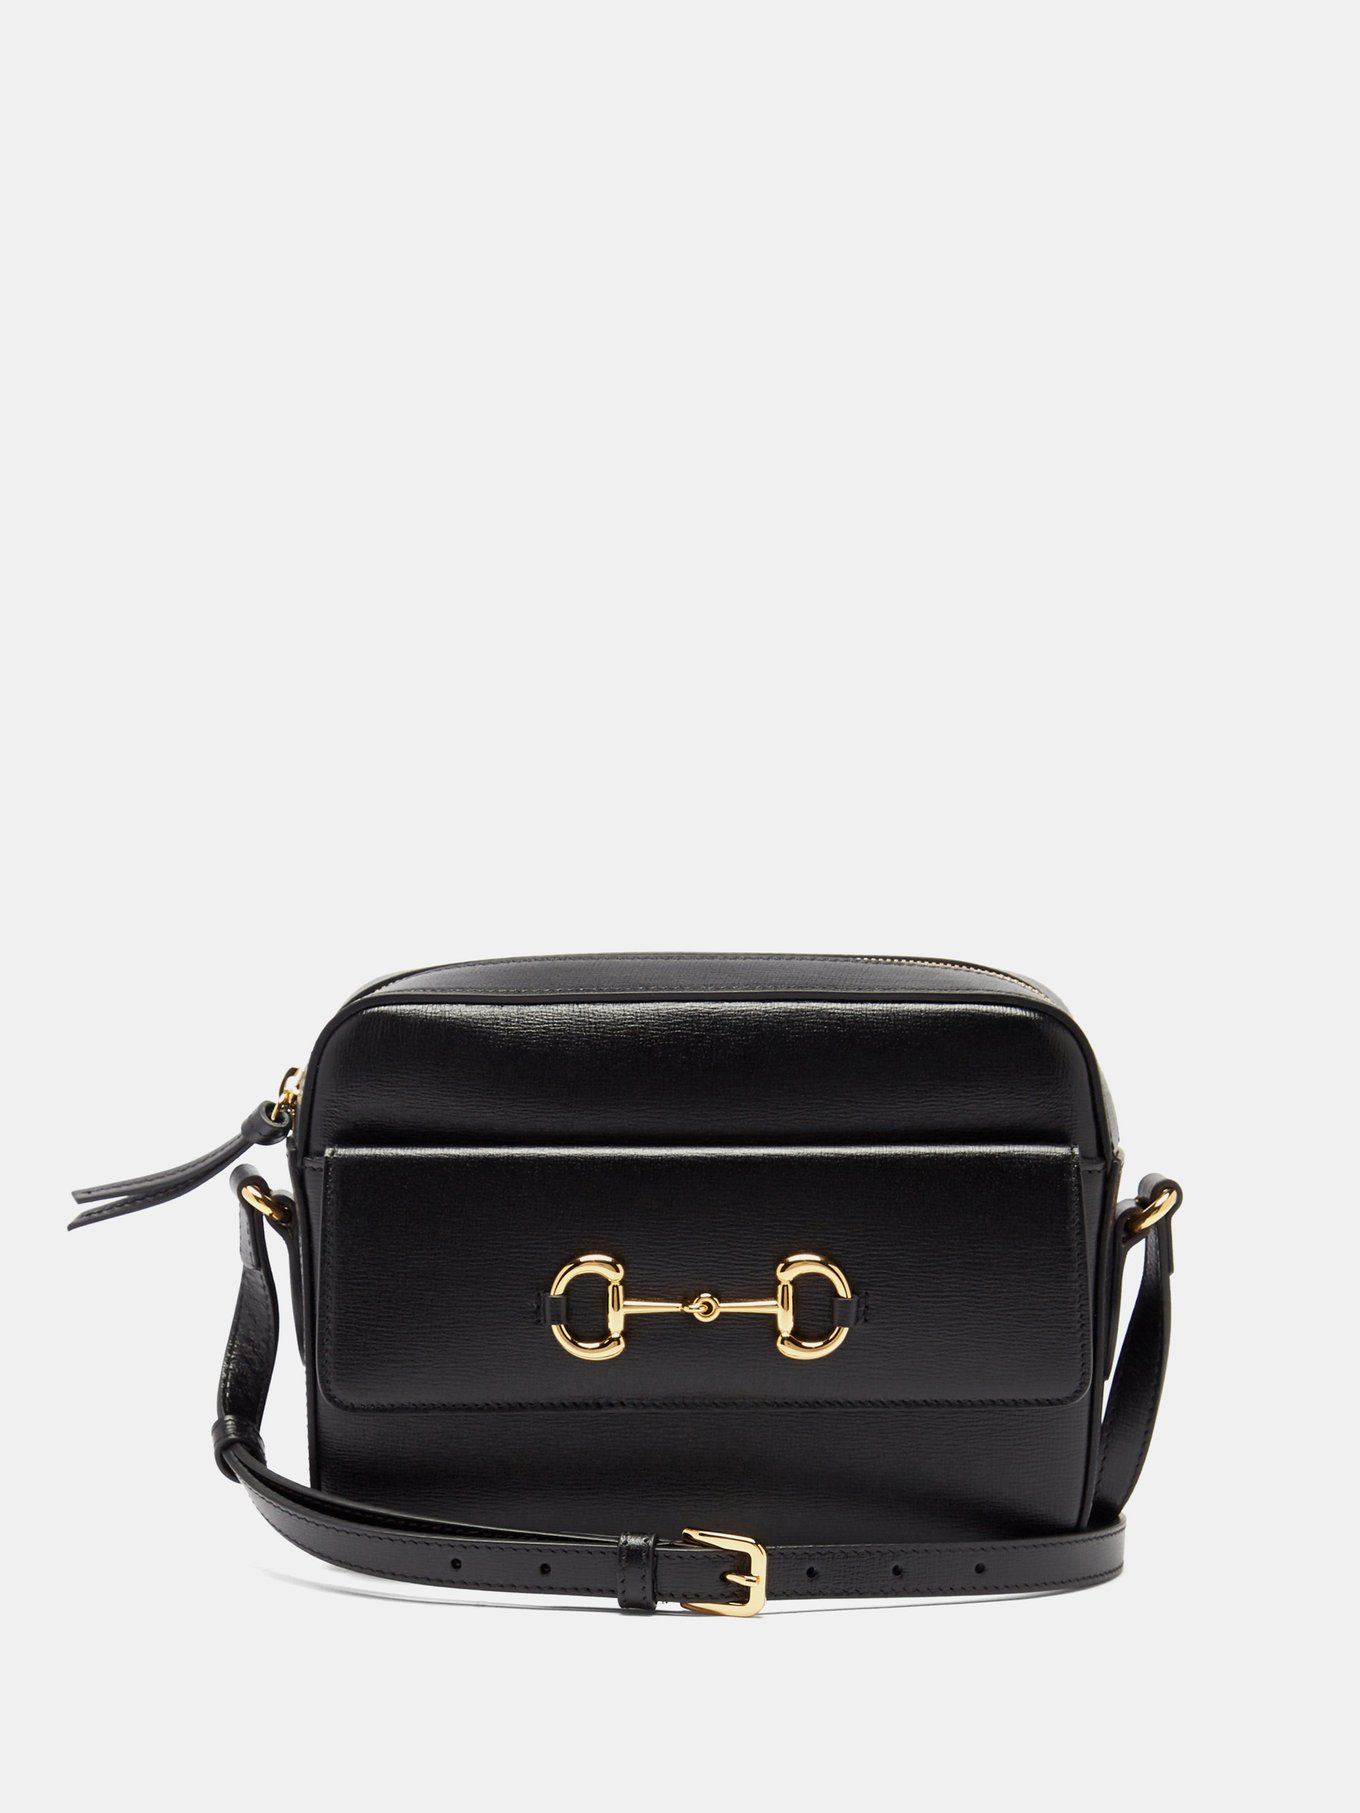 Gucci Horsebit 1955 Small Bag